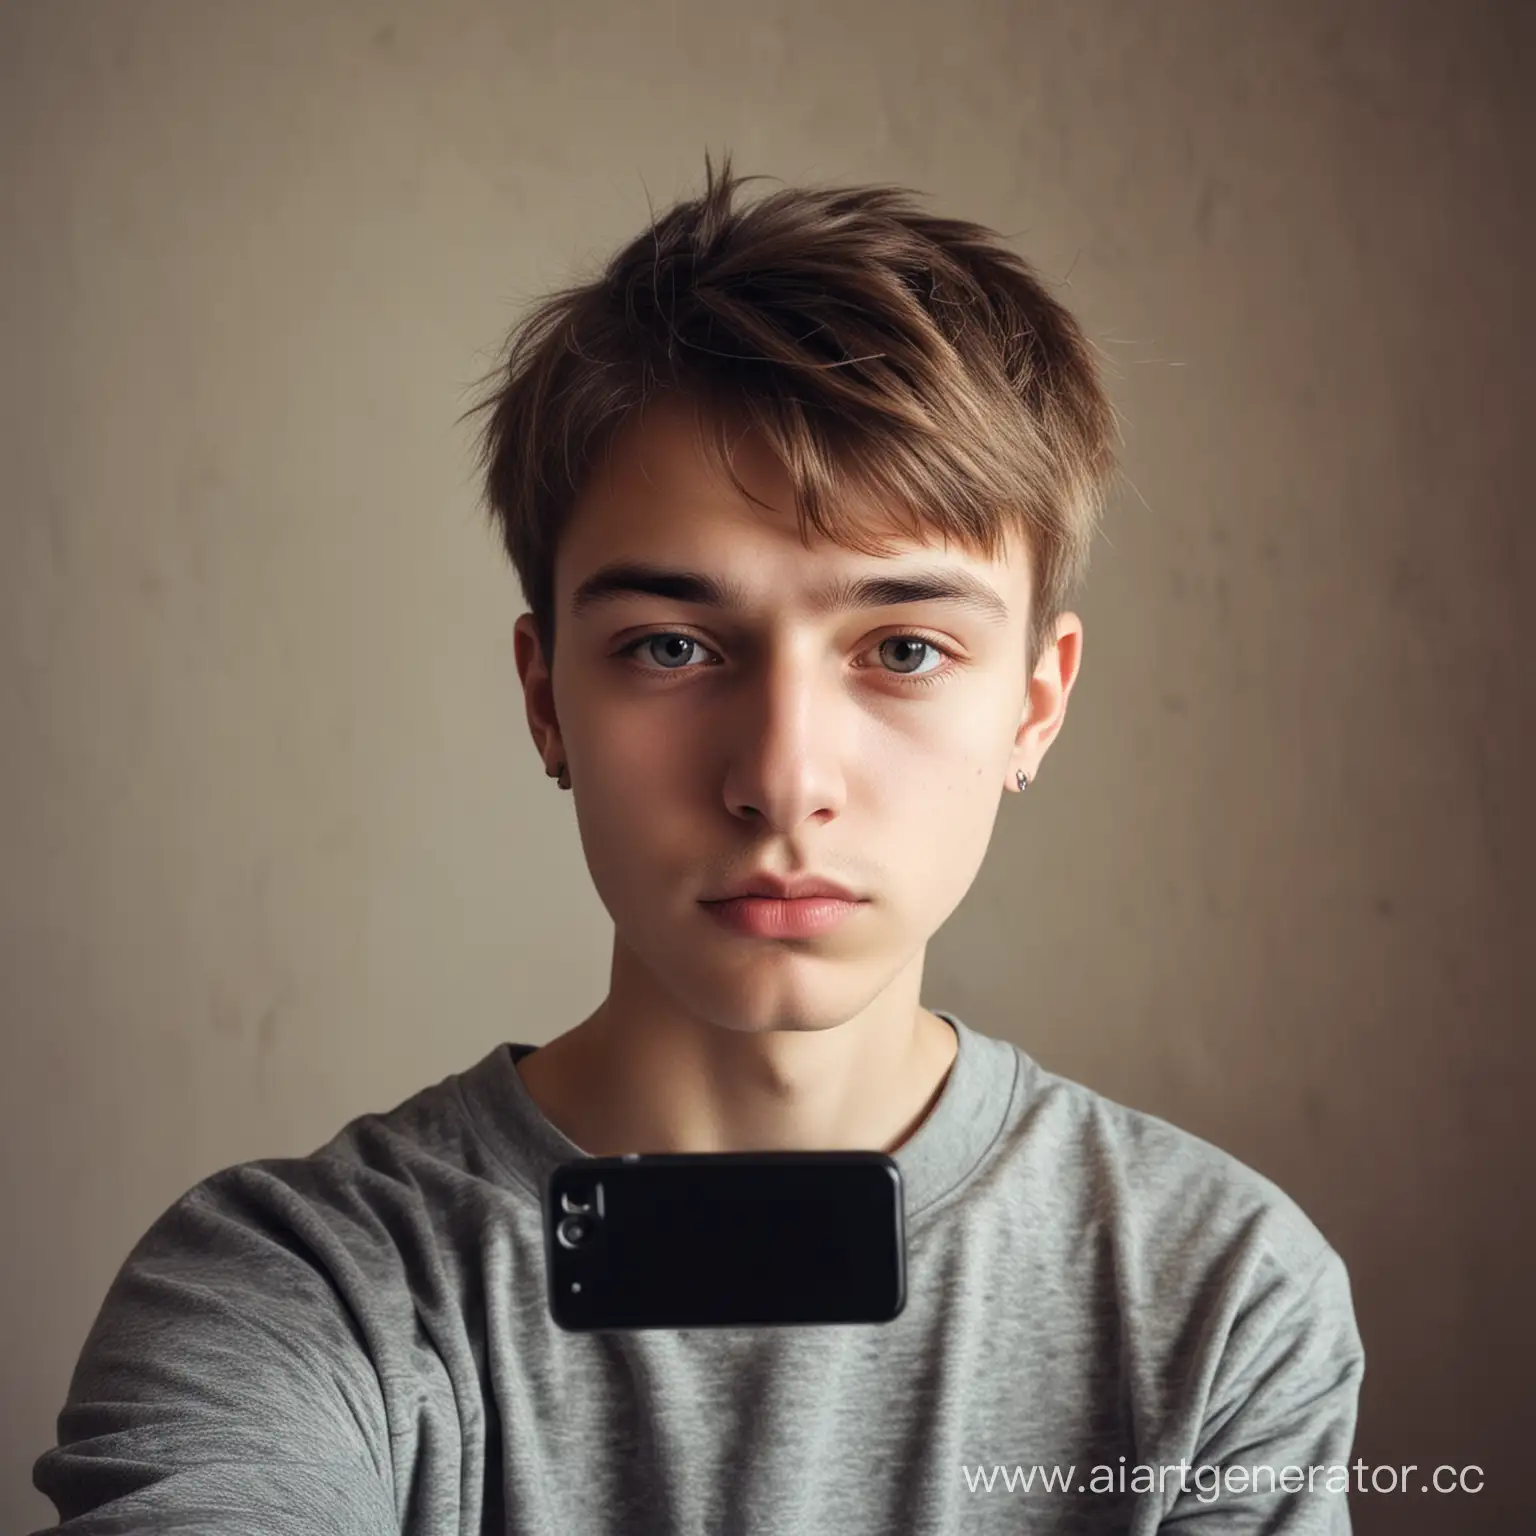 slavic teenage depressed boy making selfie